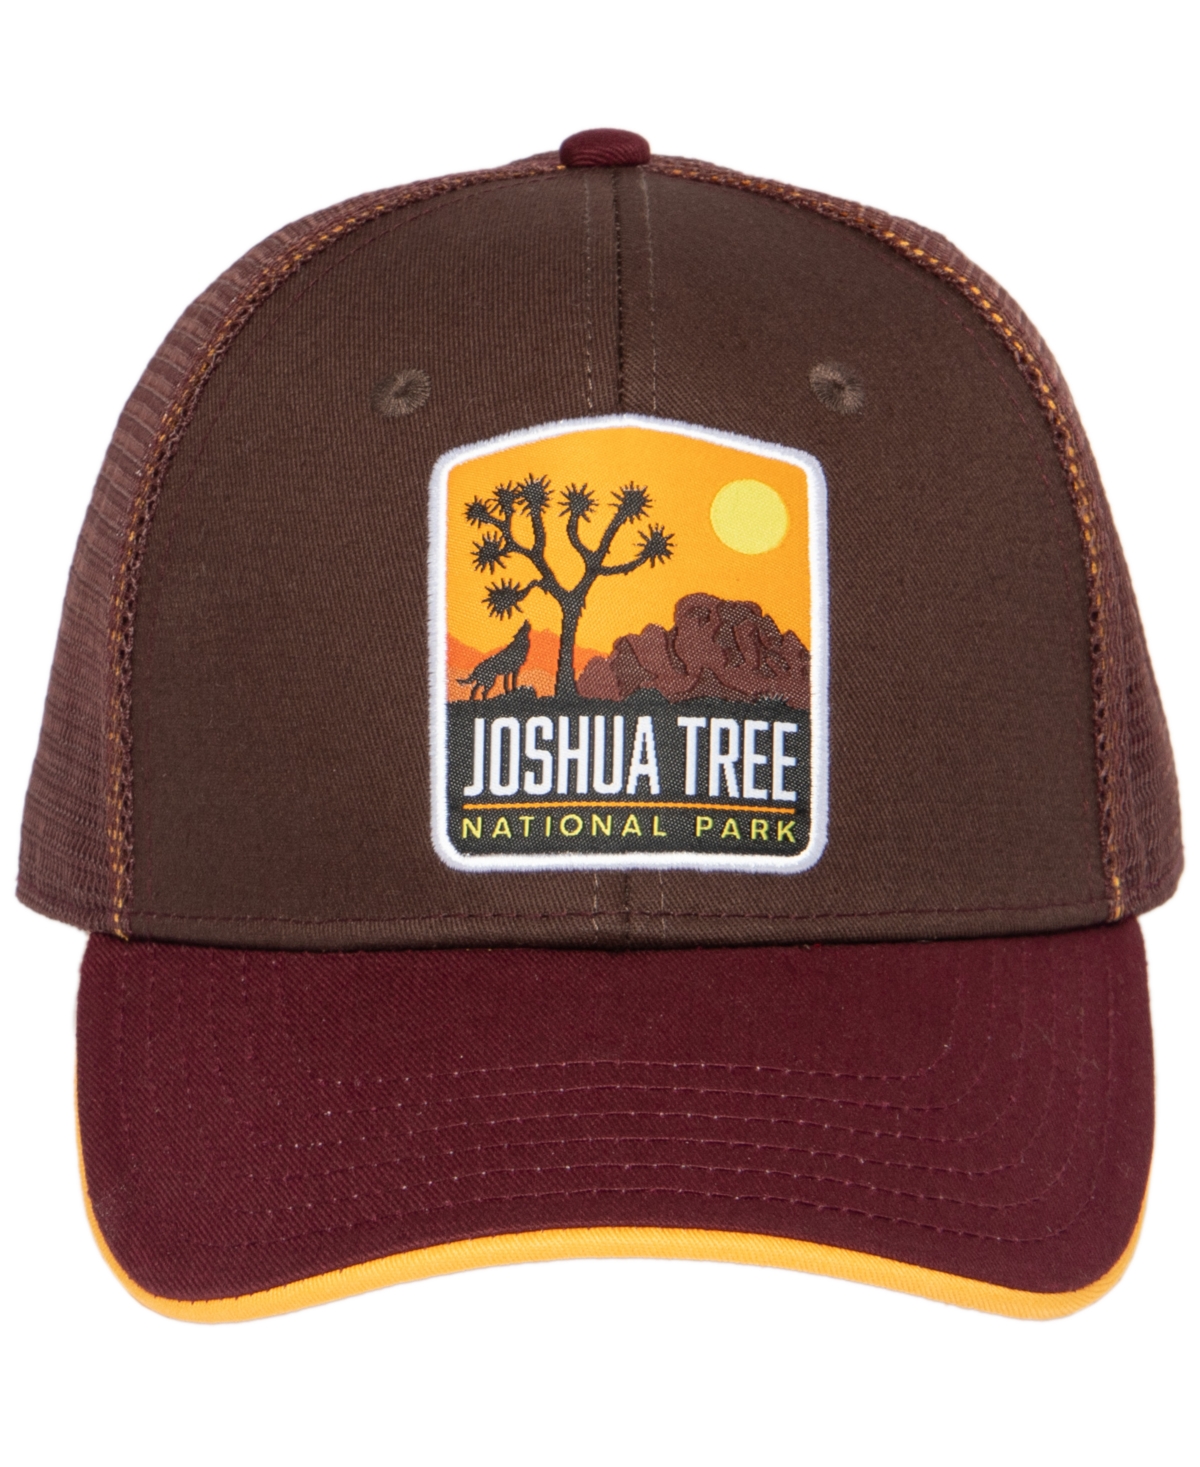 Men's Trucker Baseball Adjustable Cap - Joshua Tree